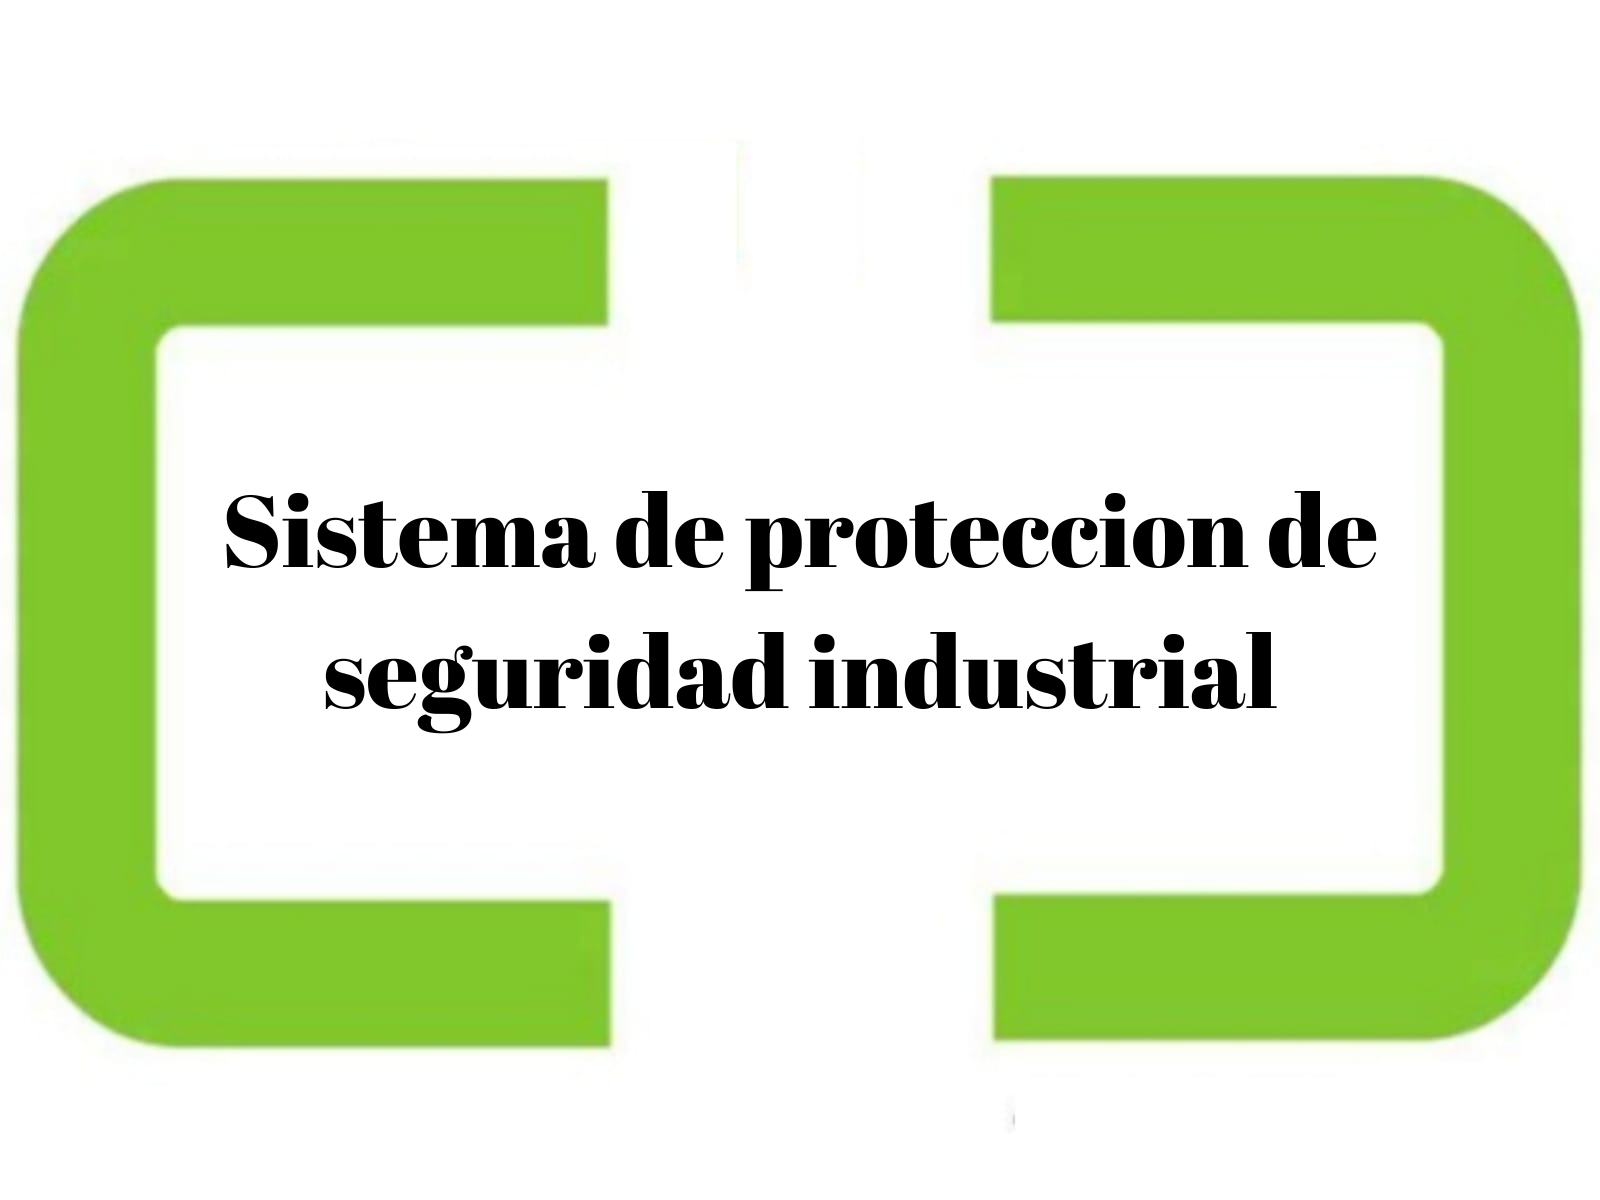 Sistema de proteccion de seguridad industrial